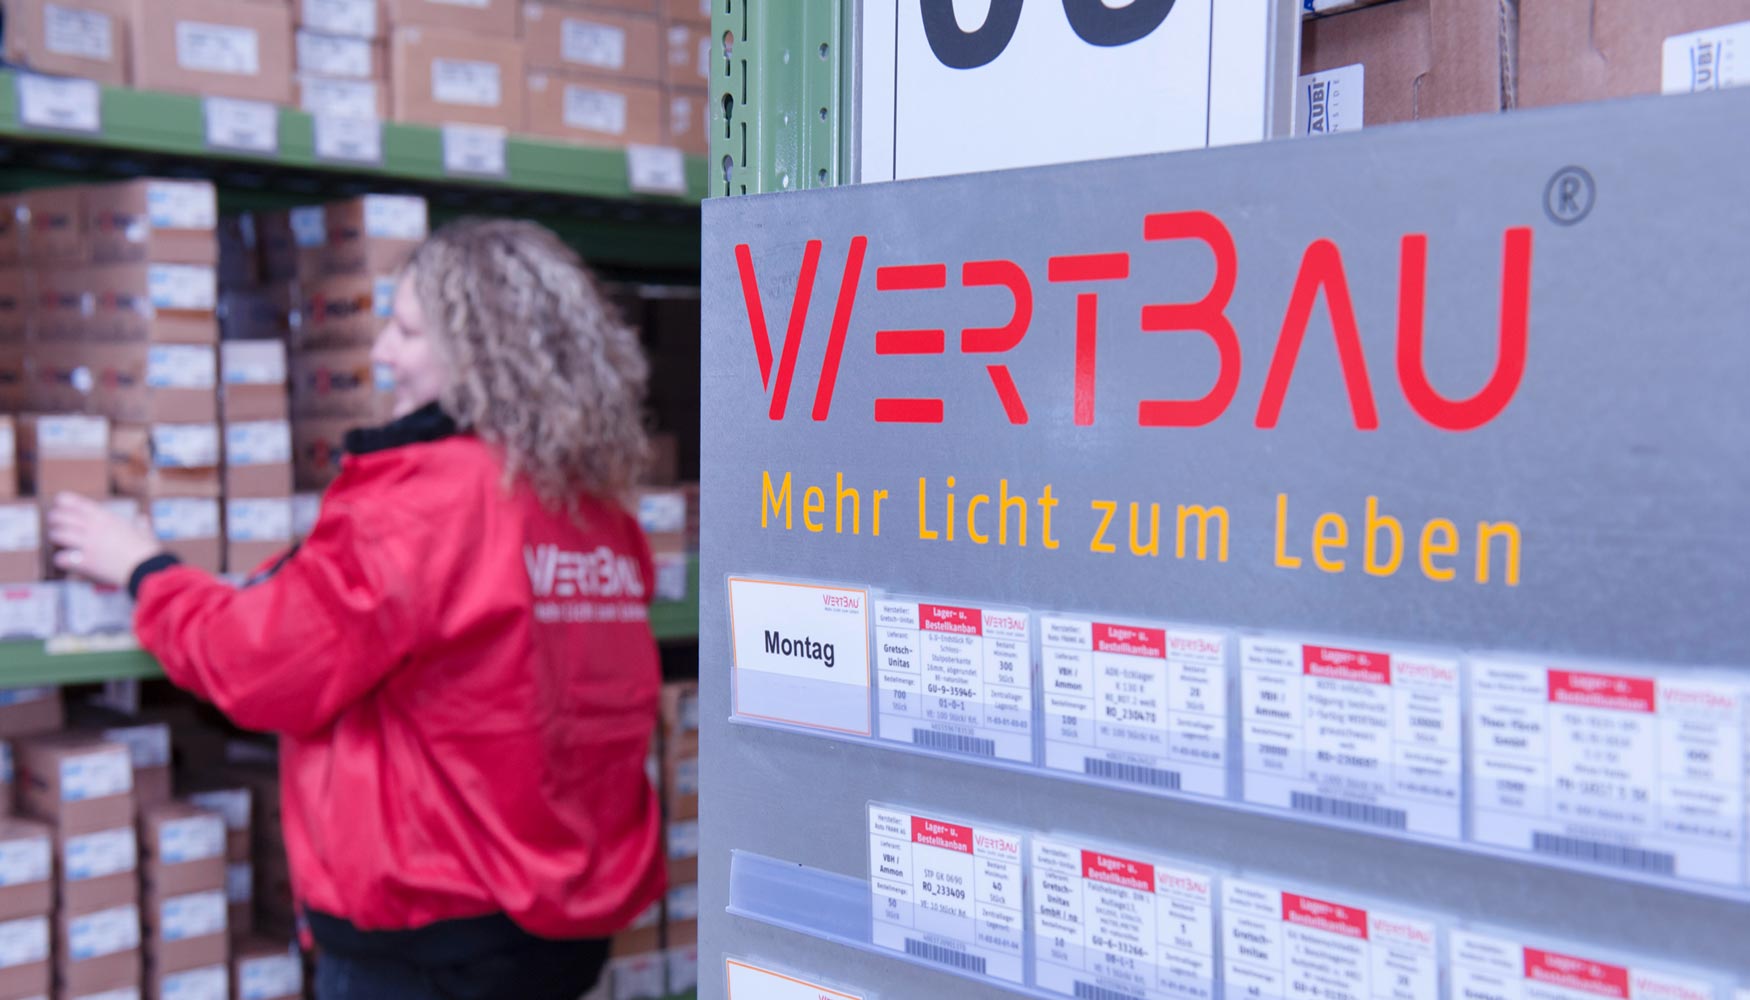 PrefWeb tambin ayuda a gestionar la logstica de la fbrica de Wertbau